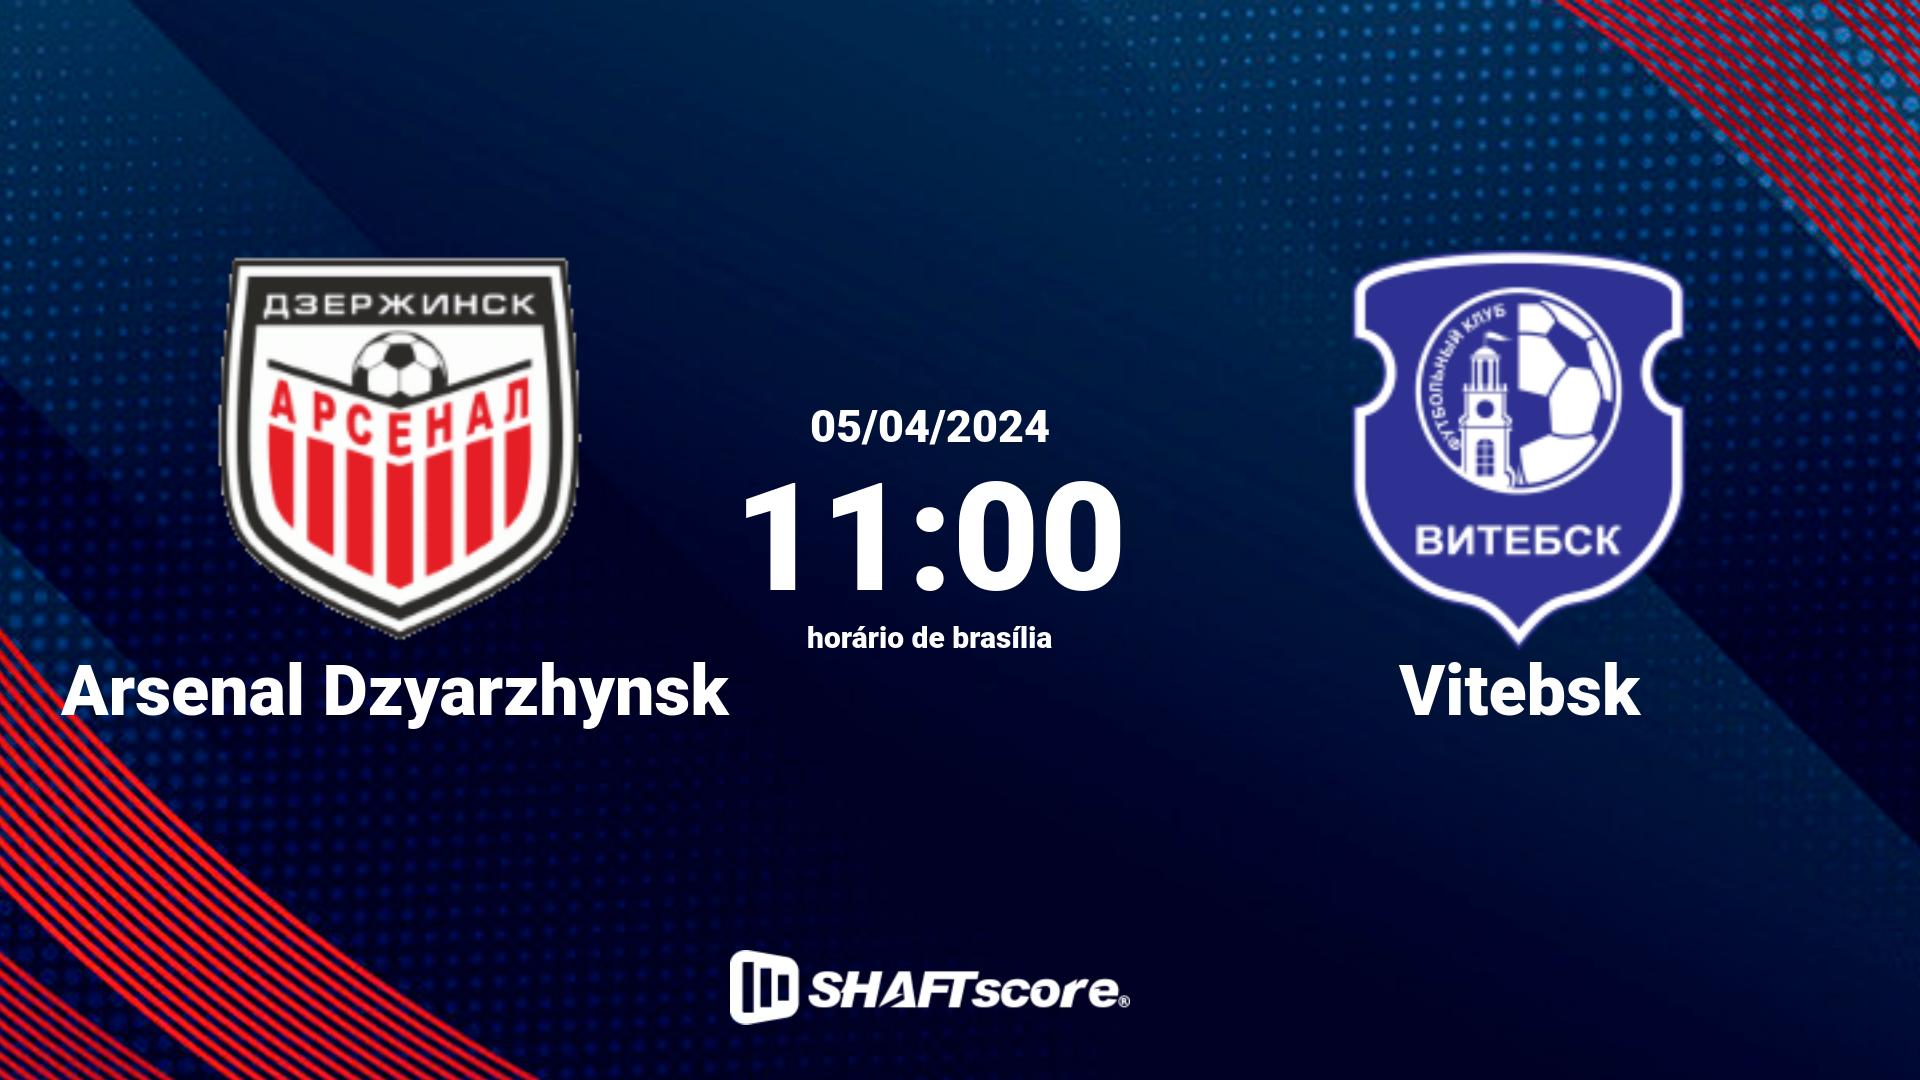 Estatísticas do jogo Arsenal Dzyarzhynsk vs Vitebsk 05.04 11:00